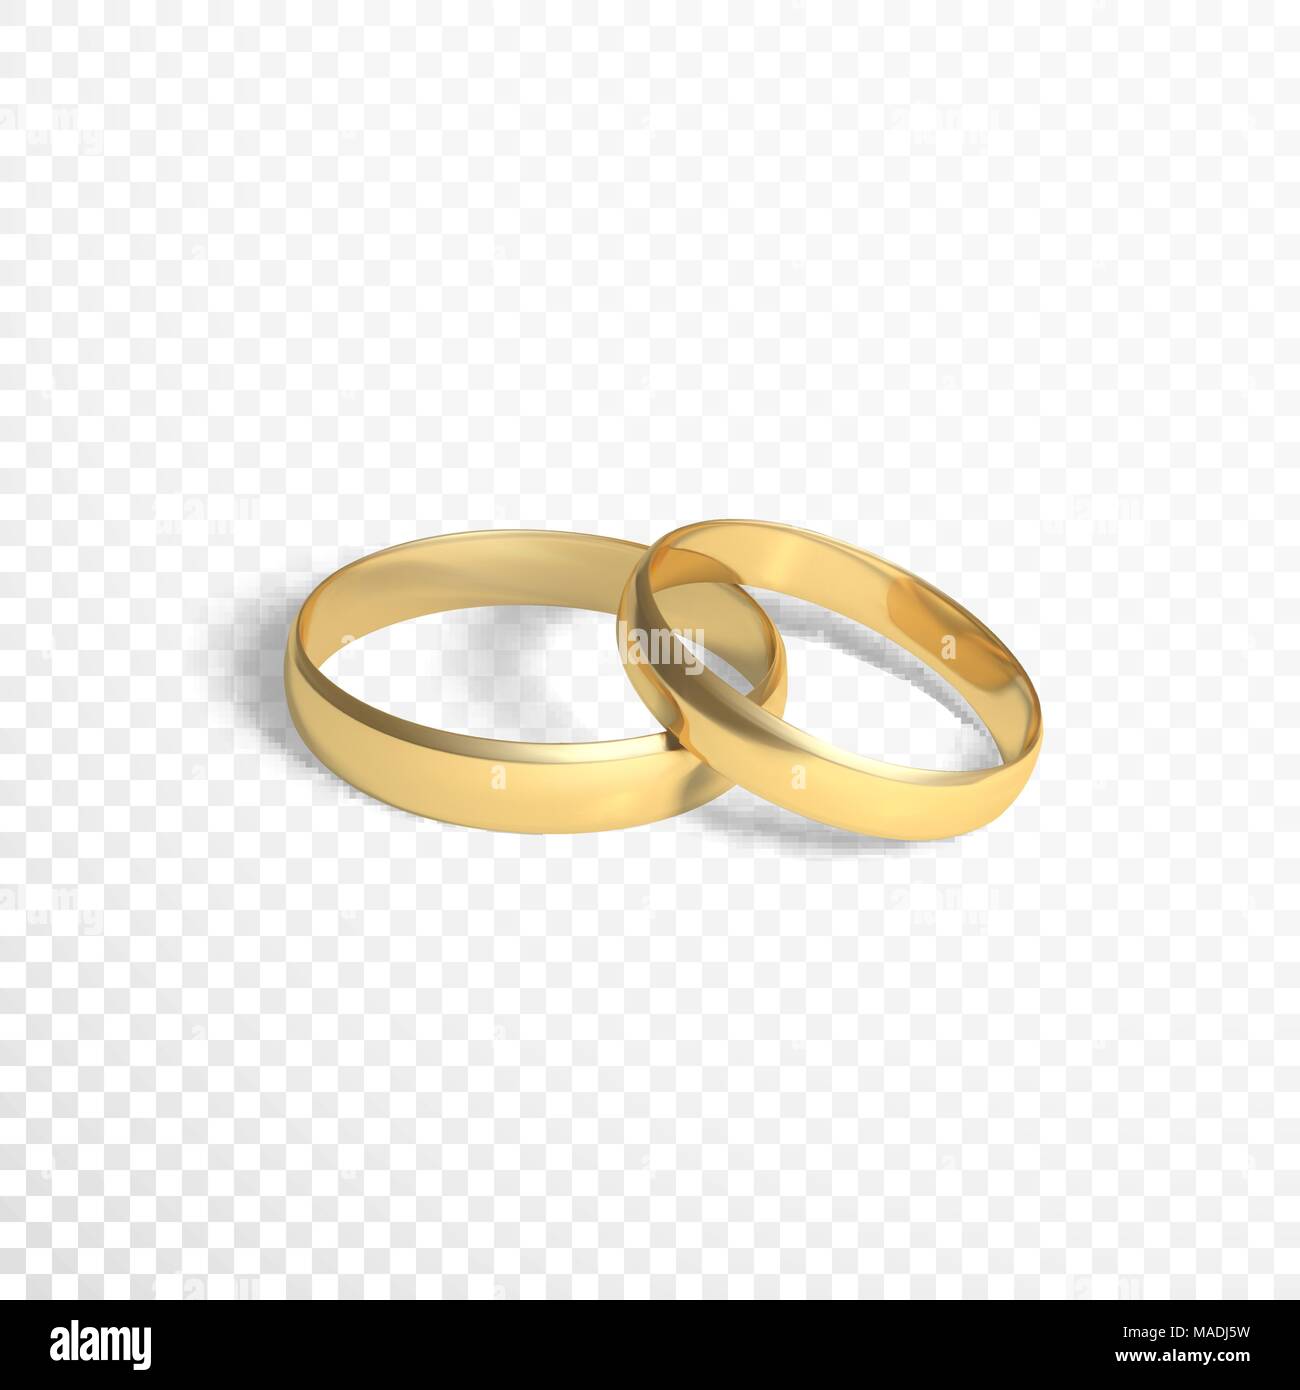 Goldene Ringe Symbol der Ehe. zwei goldene Ringe. Vector Illustration isoliert auf transparentem Hintergrund Stock Vektor